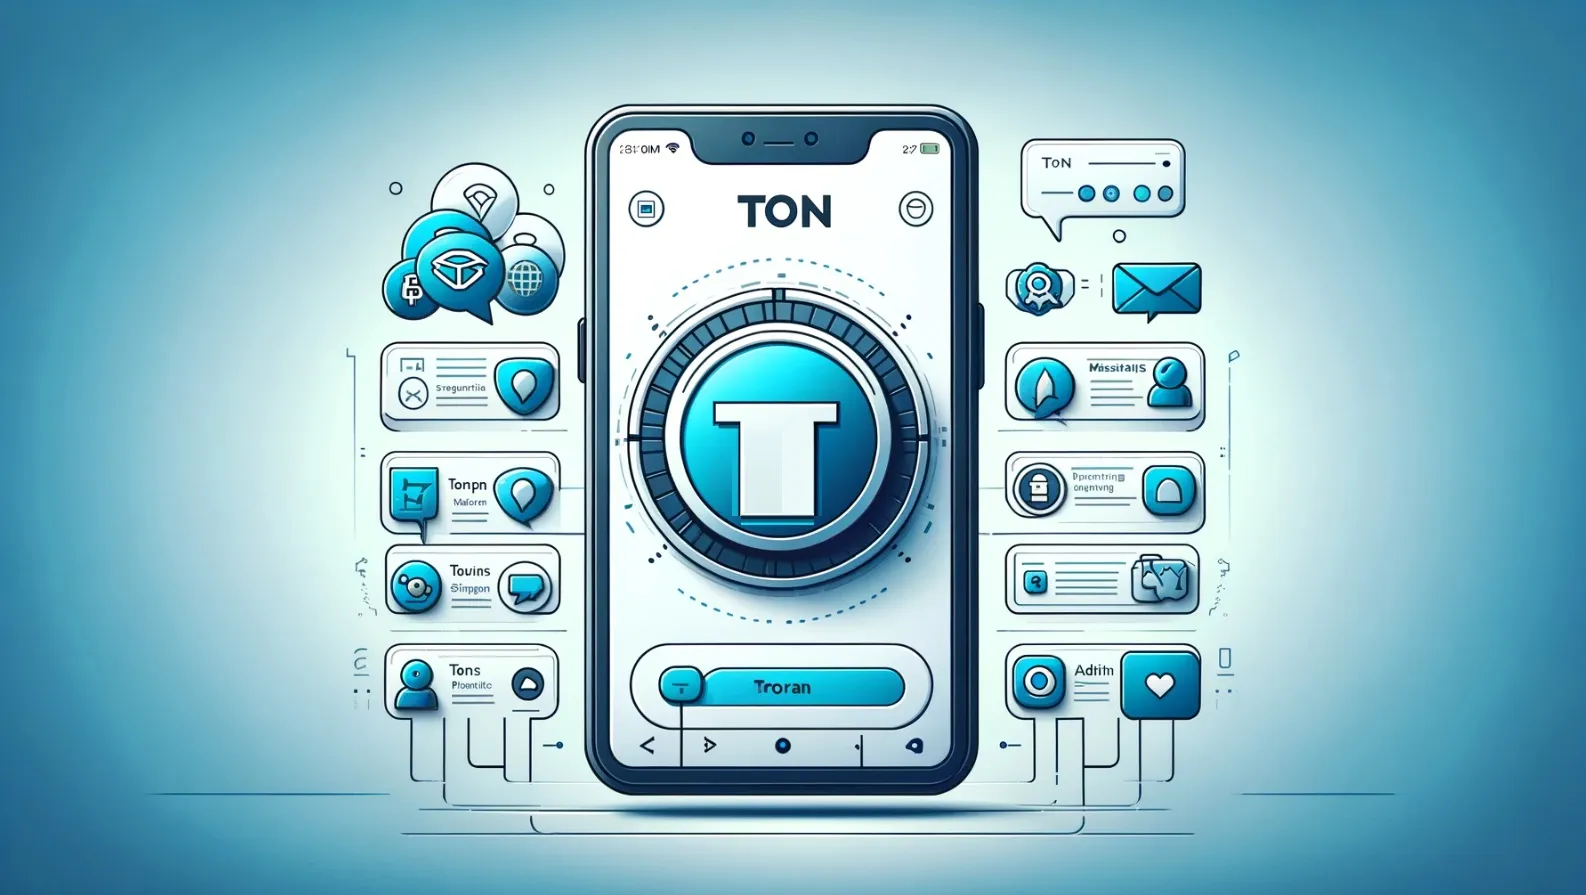 ilustracion con IA de pagos con TON en Telegram